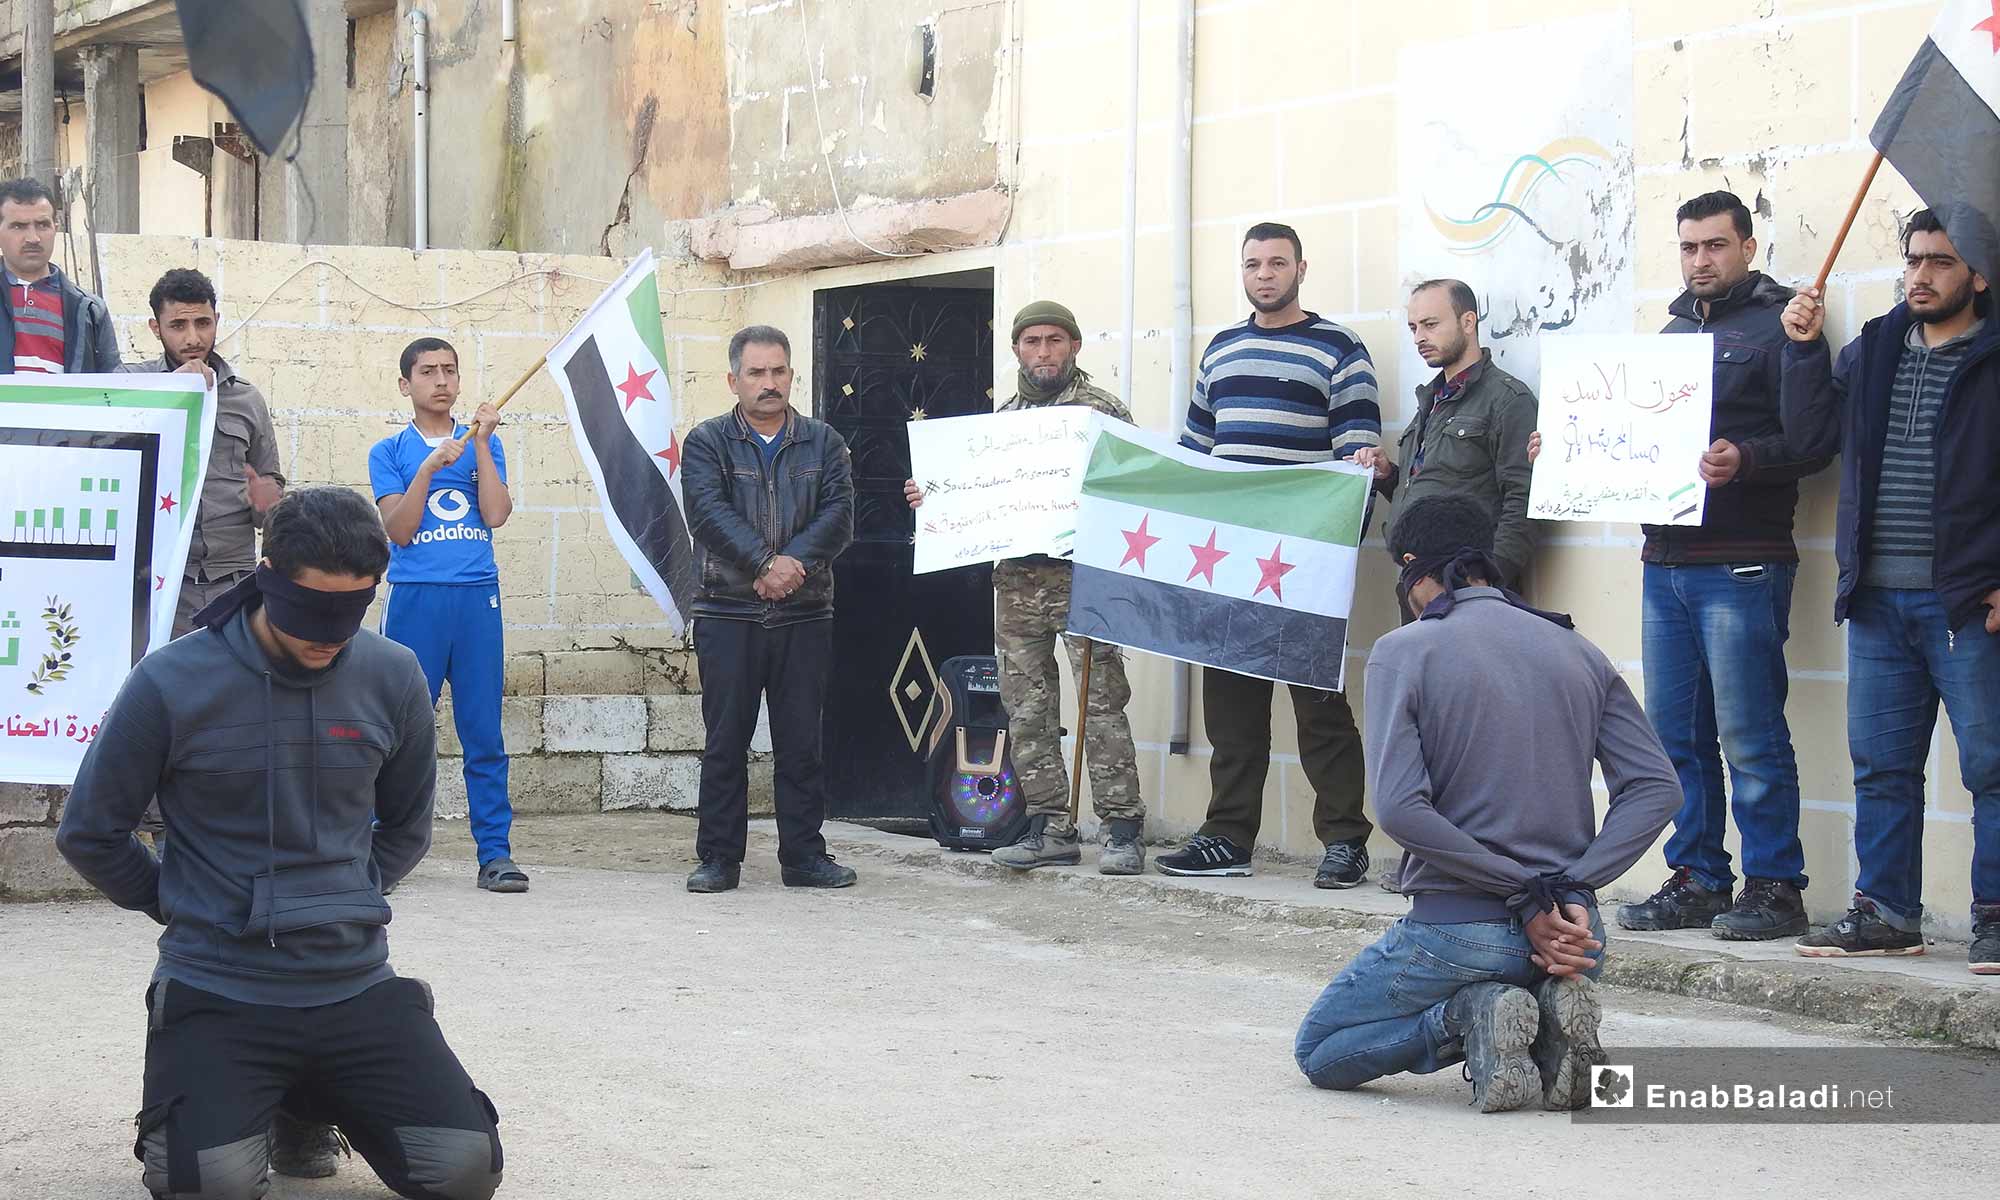 وقفة تضامنية مع المعتقلين في بلدة دابق بريف حلب الشمالي - 25 من شباط 2019 (عنب بلدي)